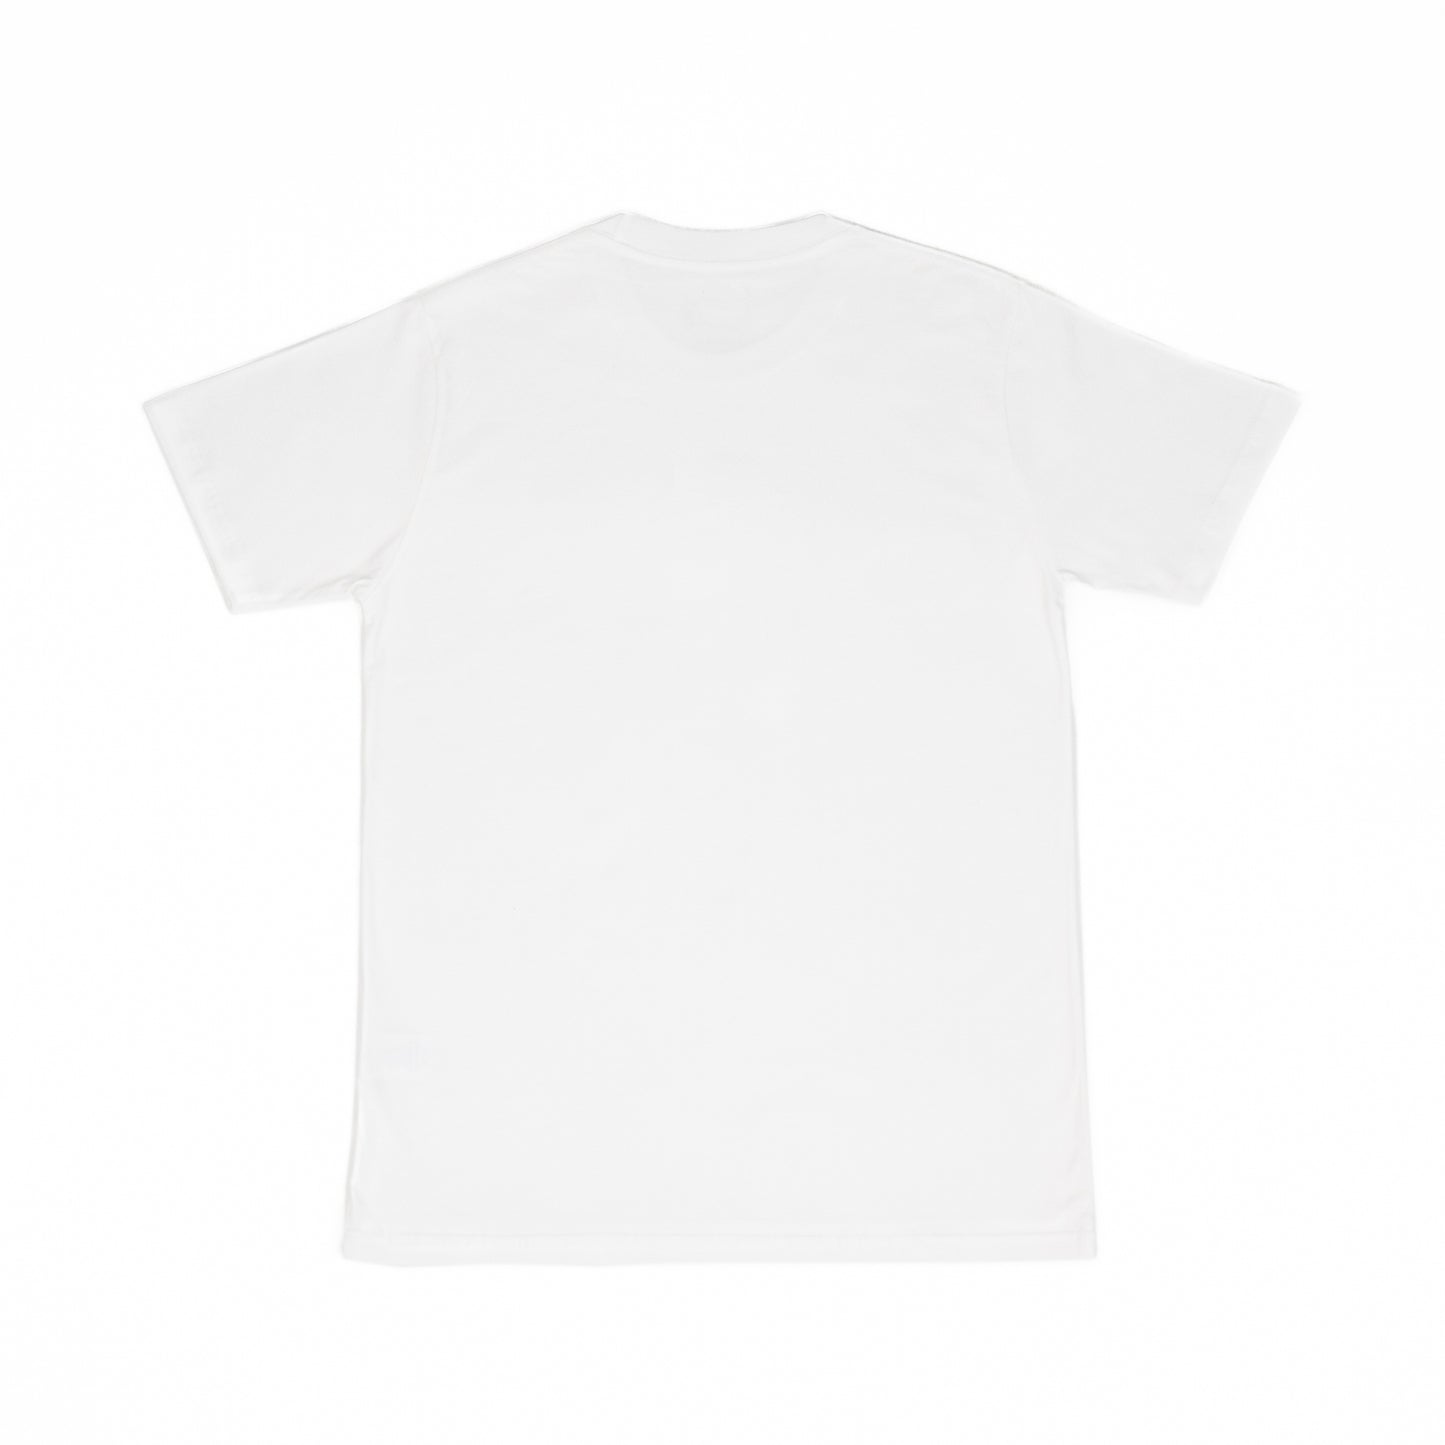 AZA T-Shirt Pro Basic Edition - White